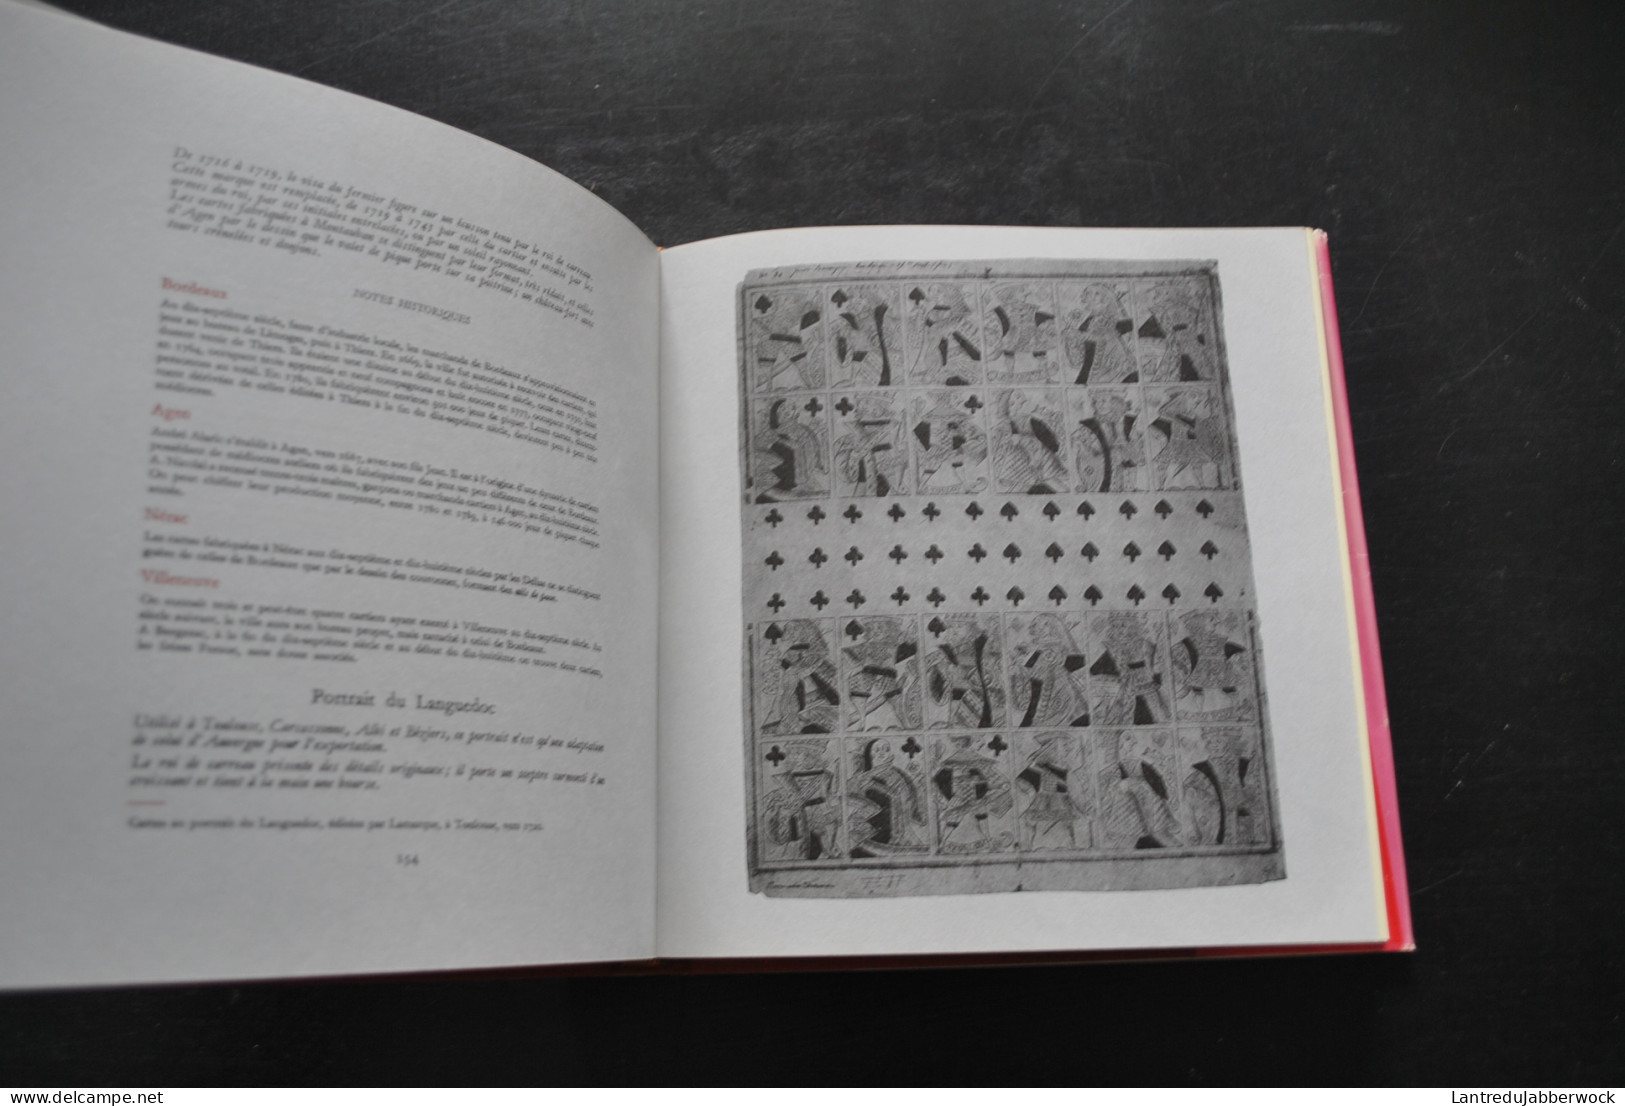 Jean-Pierre SEGUIN Le jeu de Carte Hermann 1968 Histoire Techniques de fabrication Symbolique Vocabulaire Fantaisie art